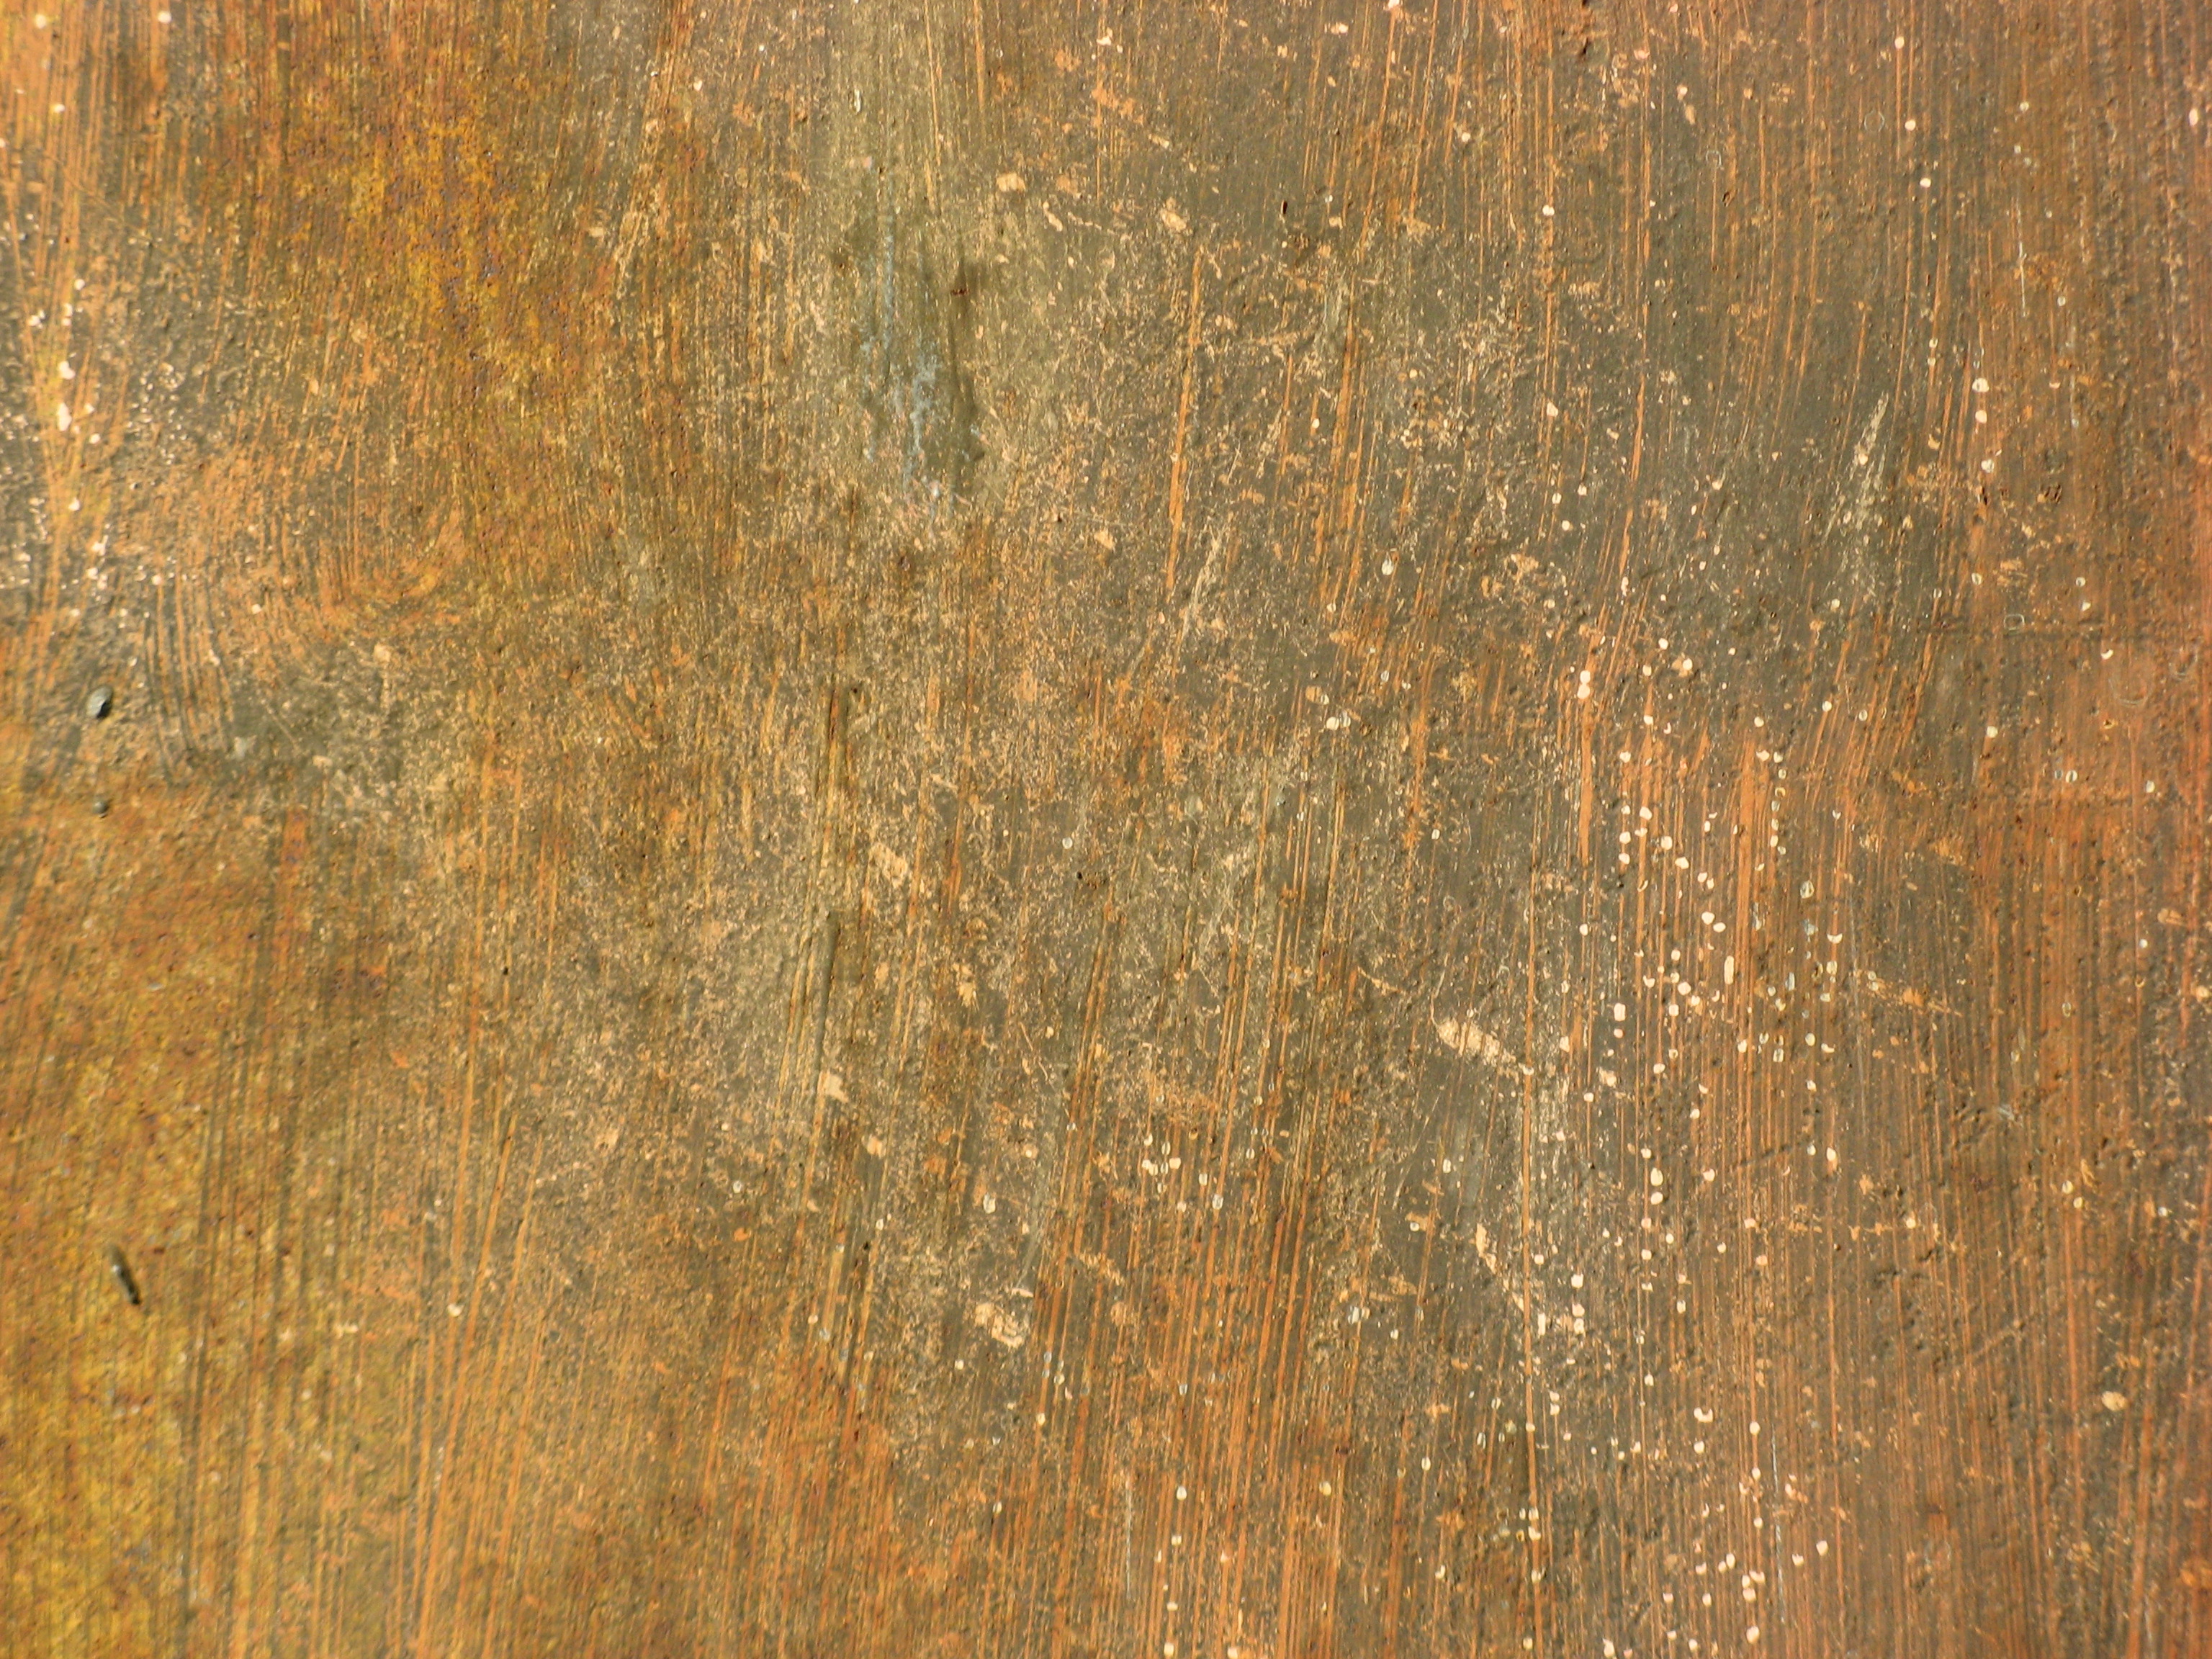 Free Grunge texture (rust, scratch, wall)